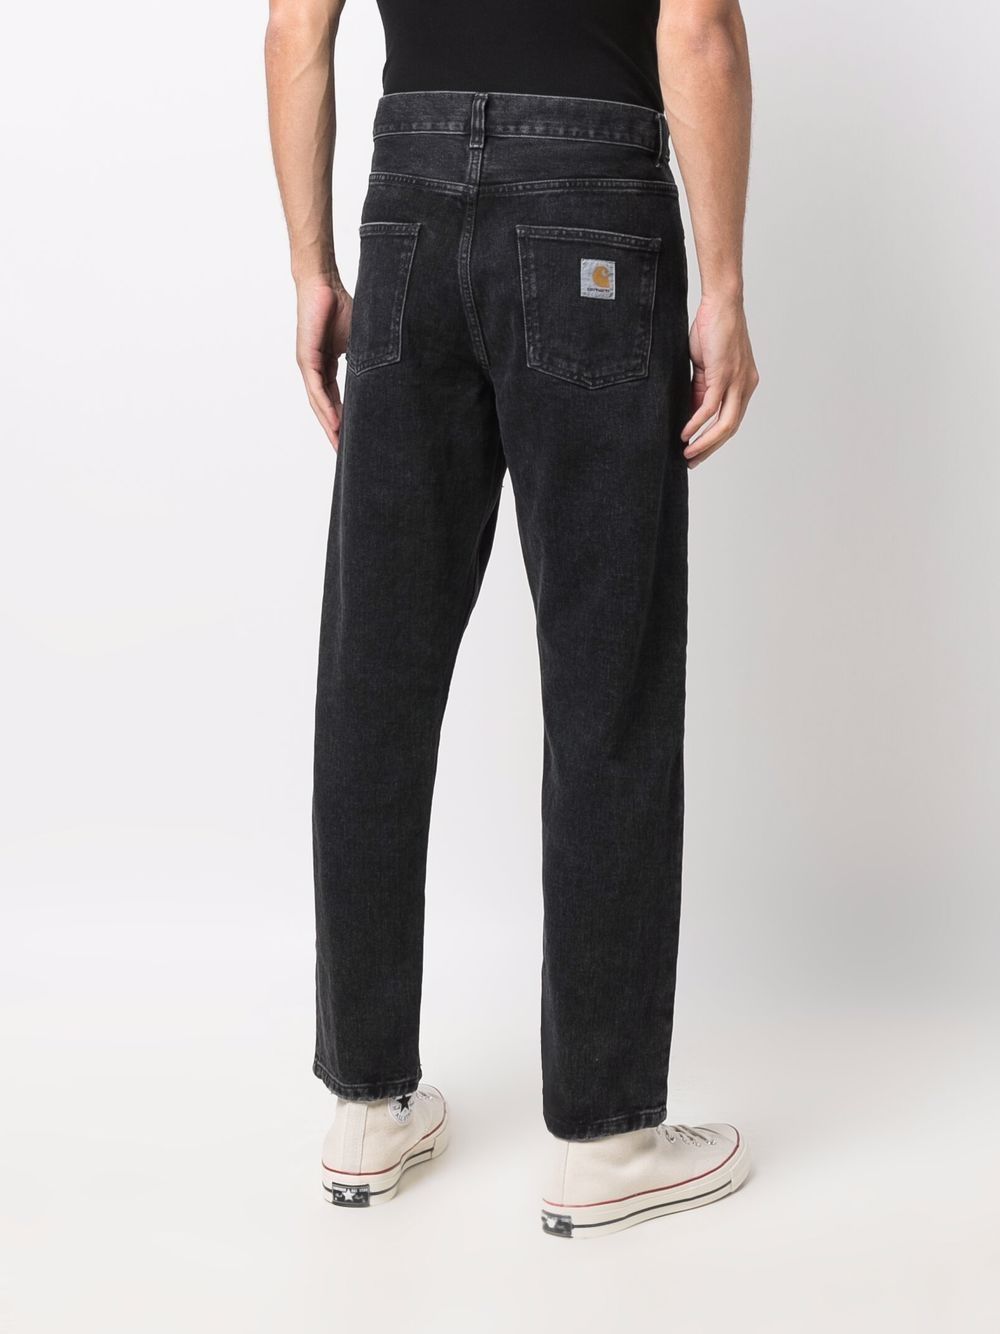 фото Carhartt wip прямые джинсы с заниженной талией